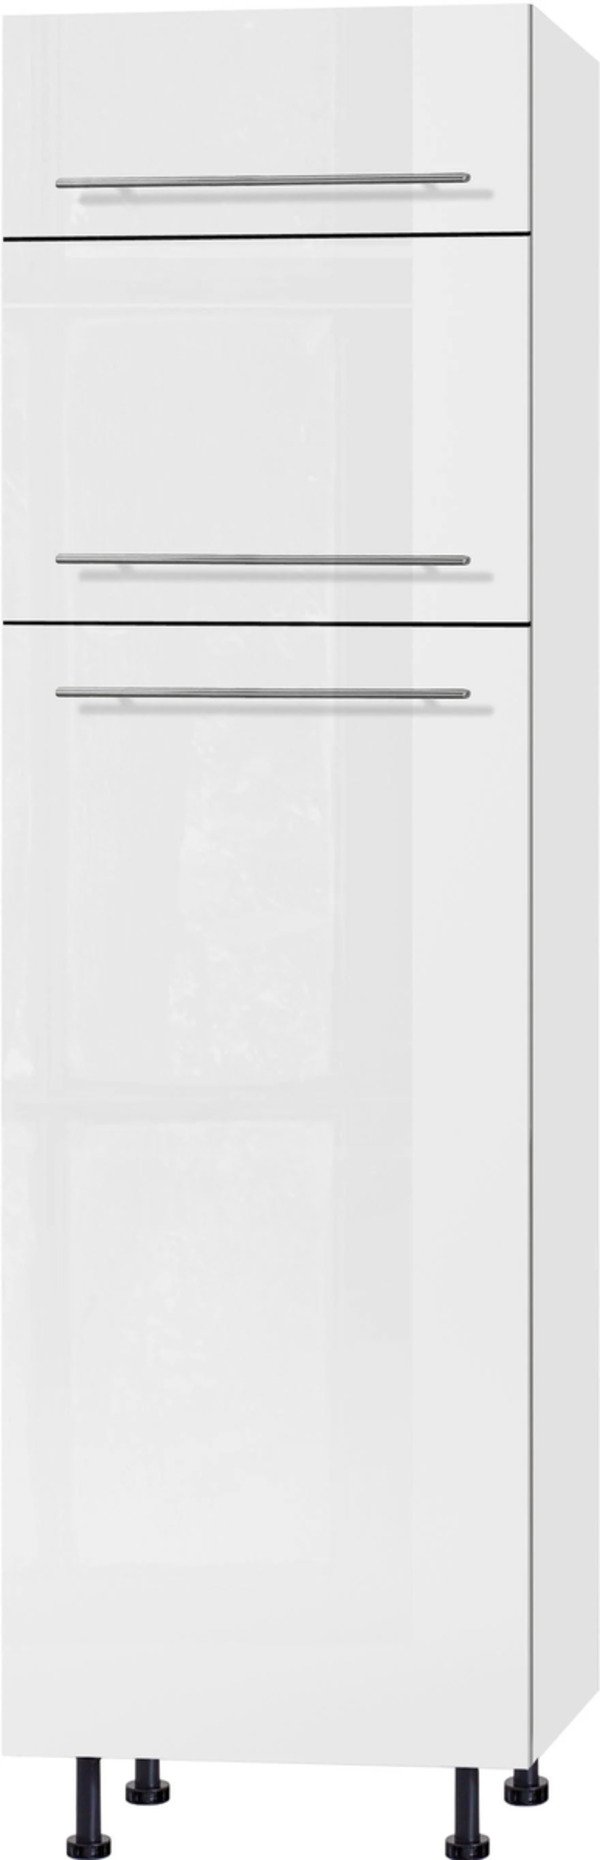 Bild 1 von OPTIFIT Kühlumbauschrank "Bern", 60 cm breit, 212 cm hoch, mit höhenverstellbaren Stellfüßen